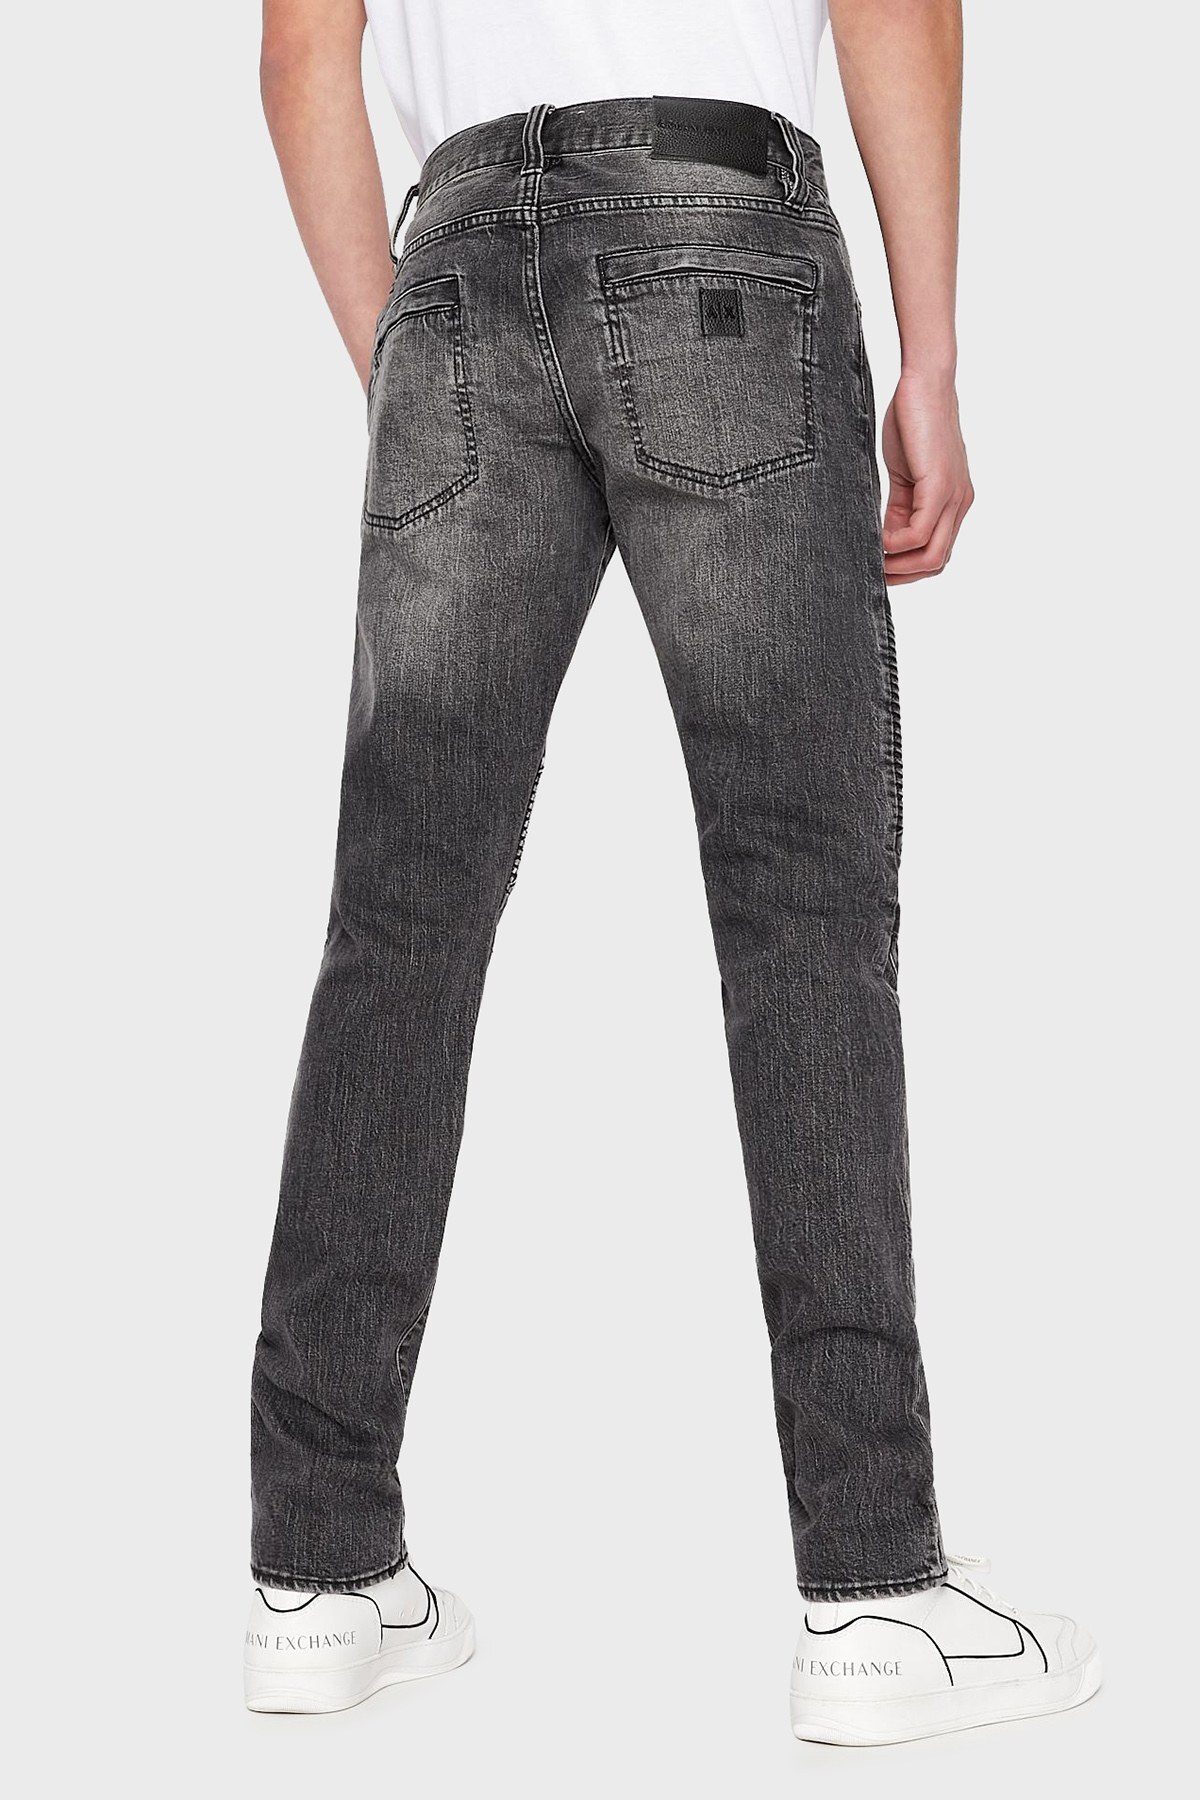 Armani Exchange J27 Pamuklu Normal Bel Skinny Fit Jeans Erkek Kot Pantolon 3LZJ27 Z1D7Z 1839 GRİ